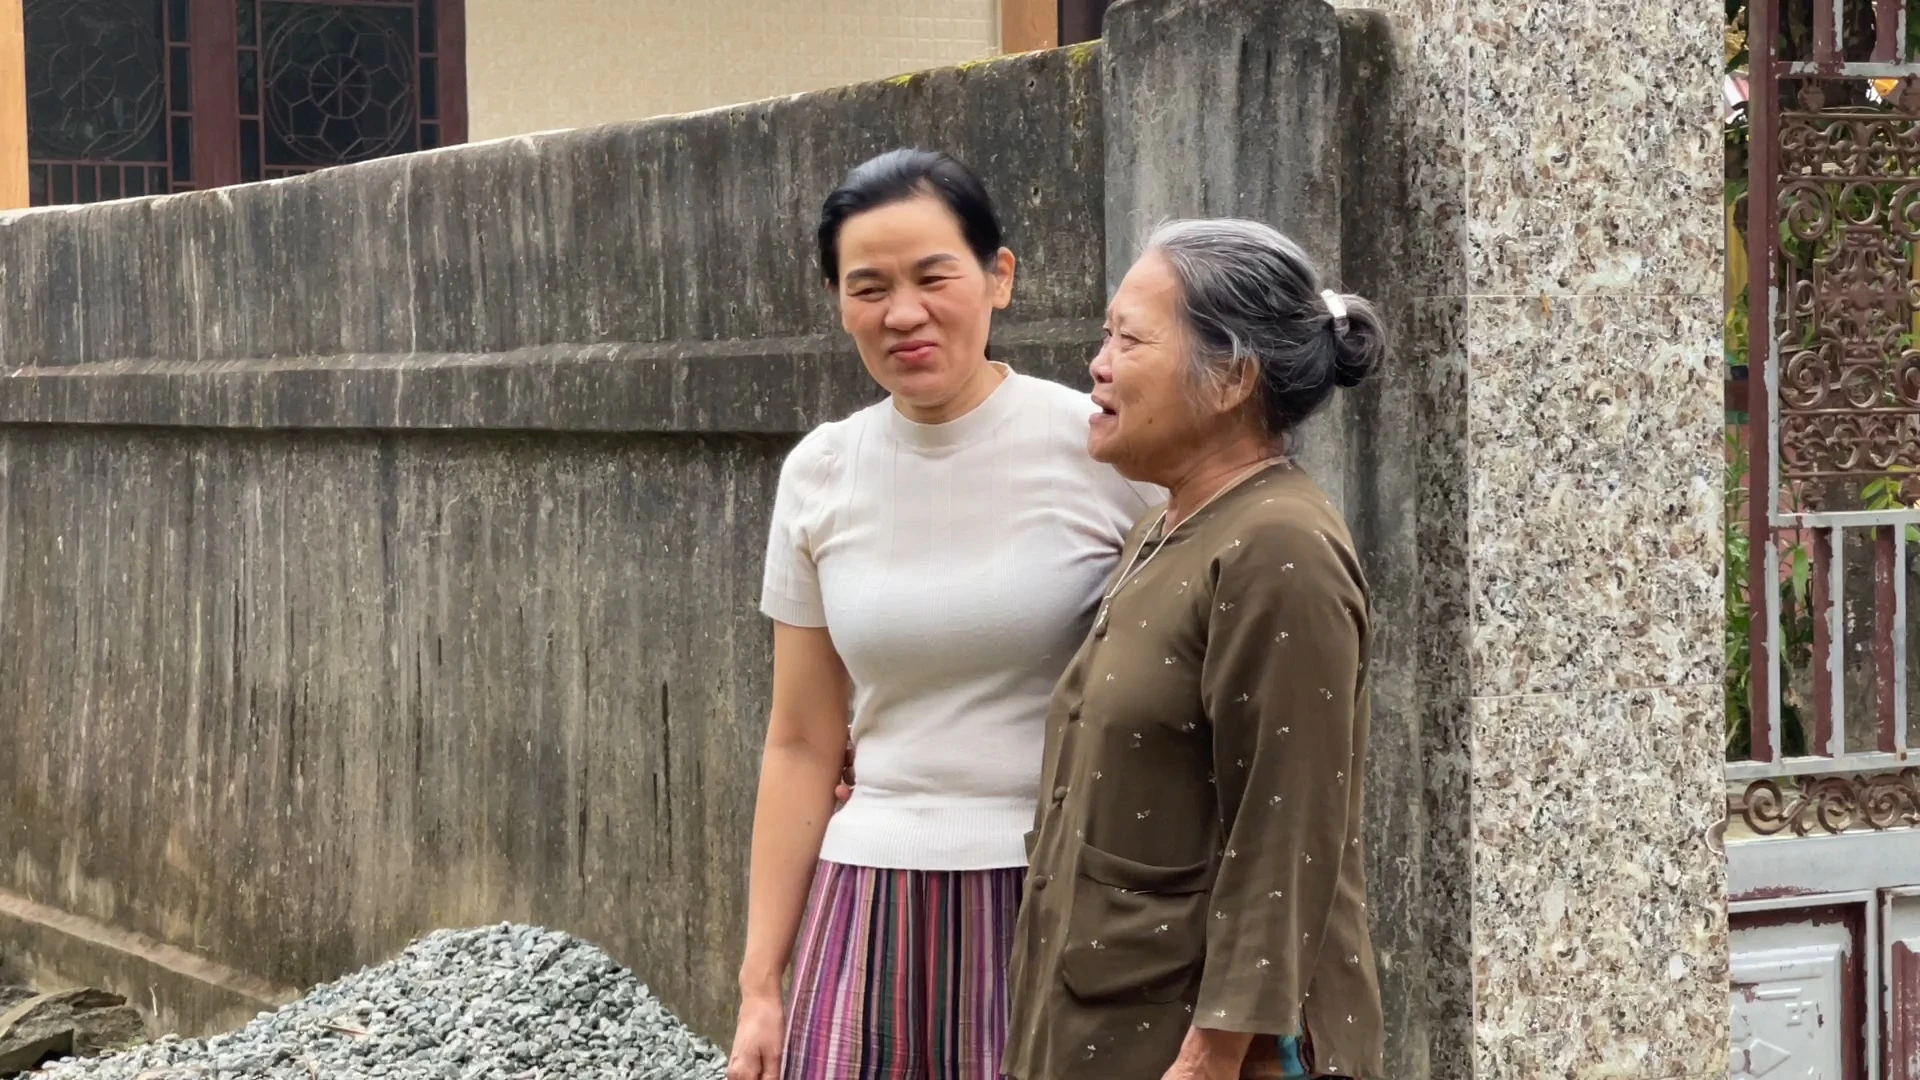 Tết trọn vẹn của nữ công nhân xứ Huế 10 năm ròng đón giao thừa xa nhà vì gánh nặng vé tàu xe